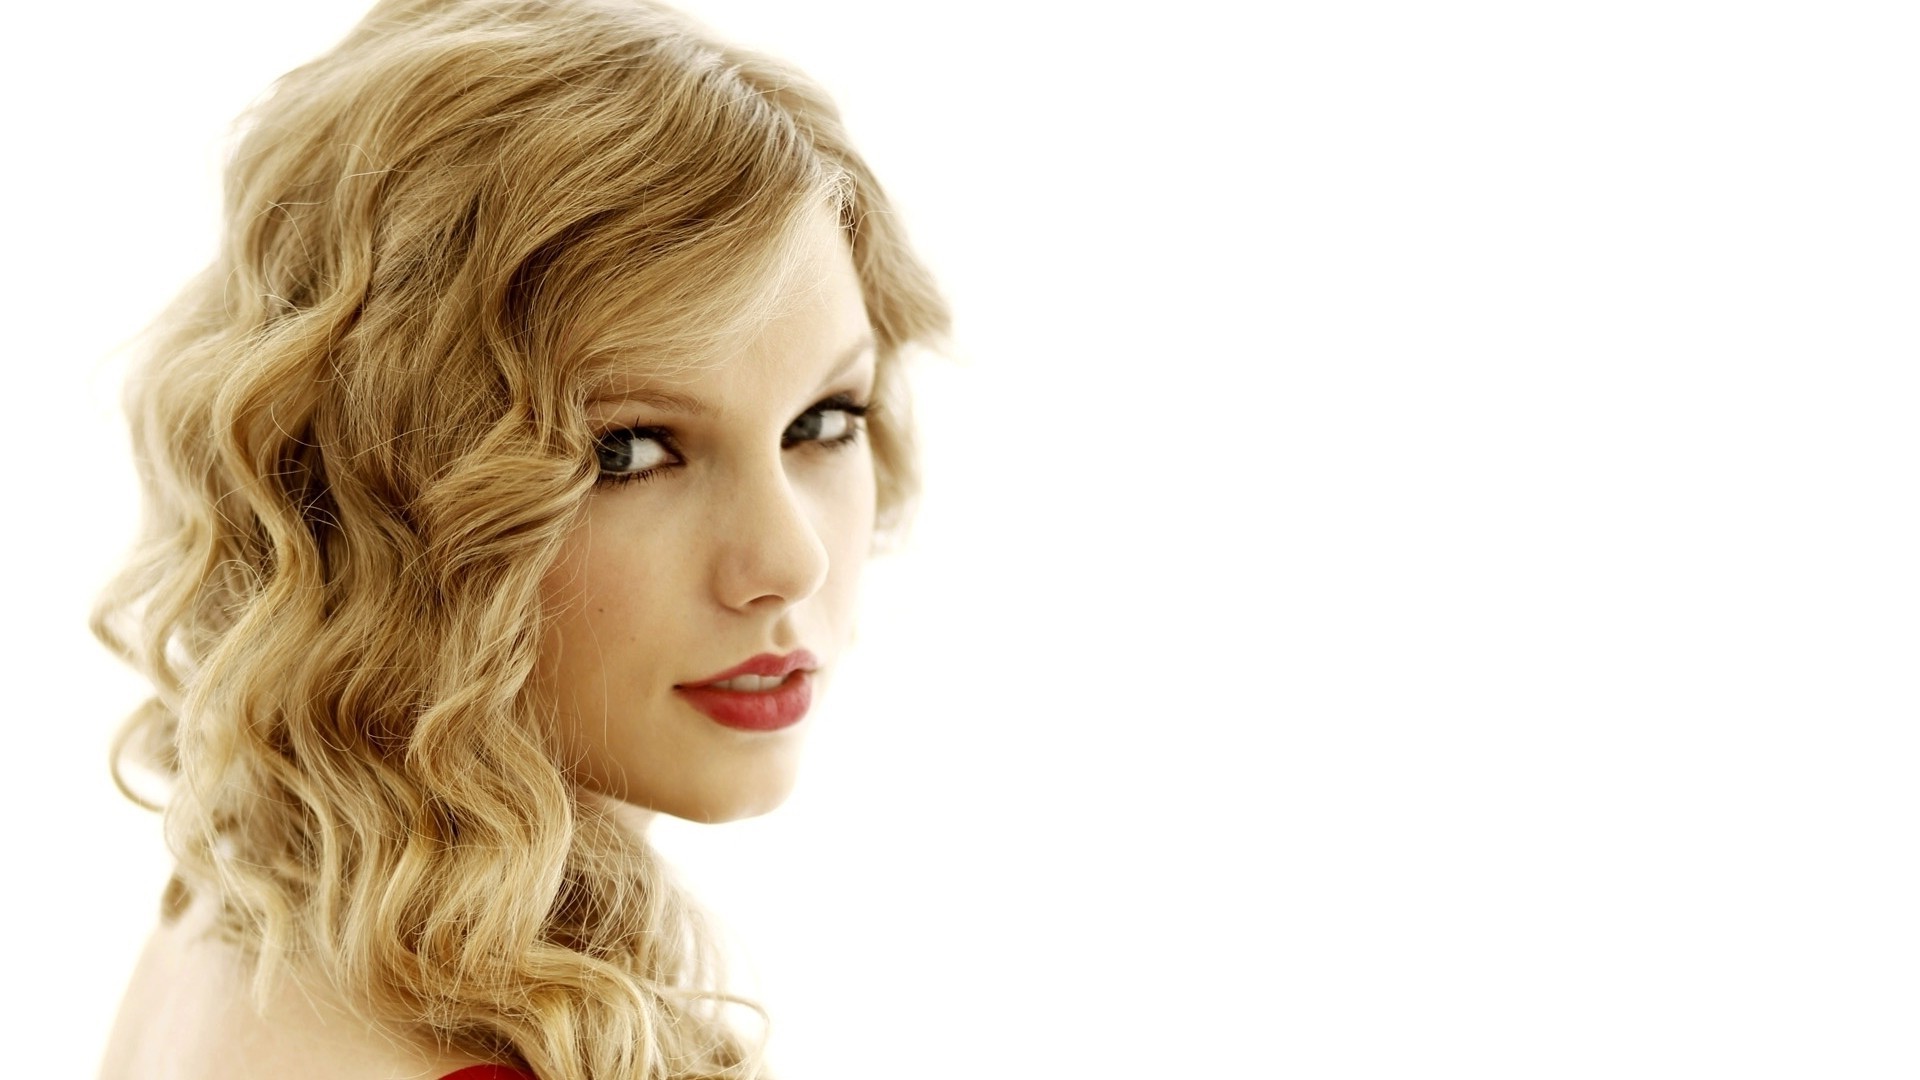 Taylor Swift, Celebrity, Blonde, Women, Singer, Portrait Wallpaper